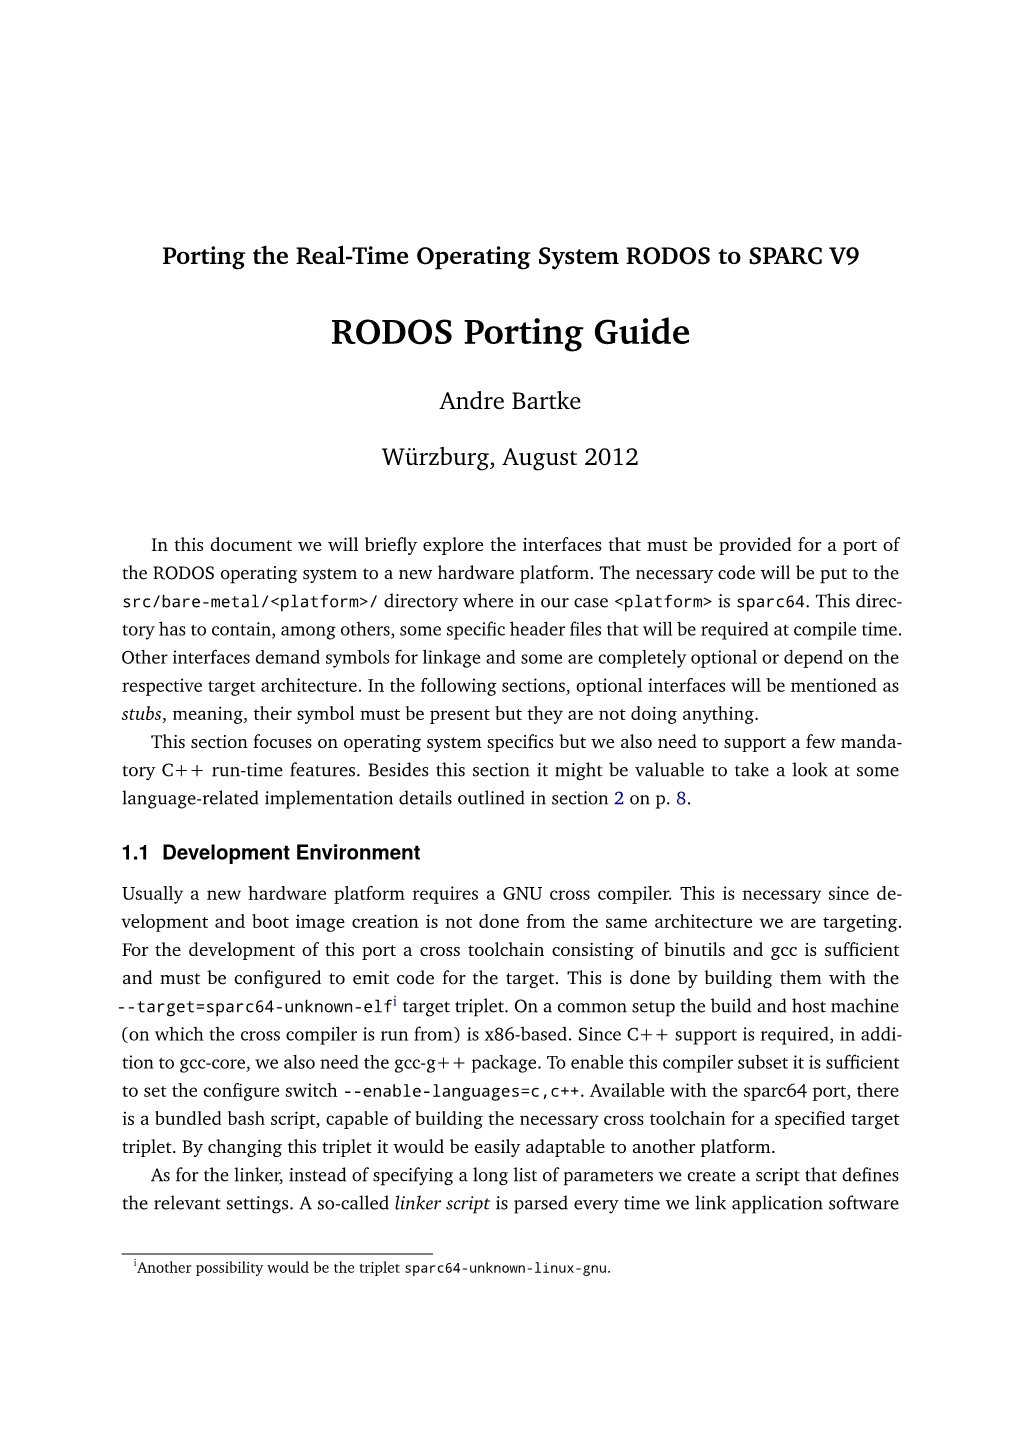 RODOS Porting Guide